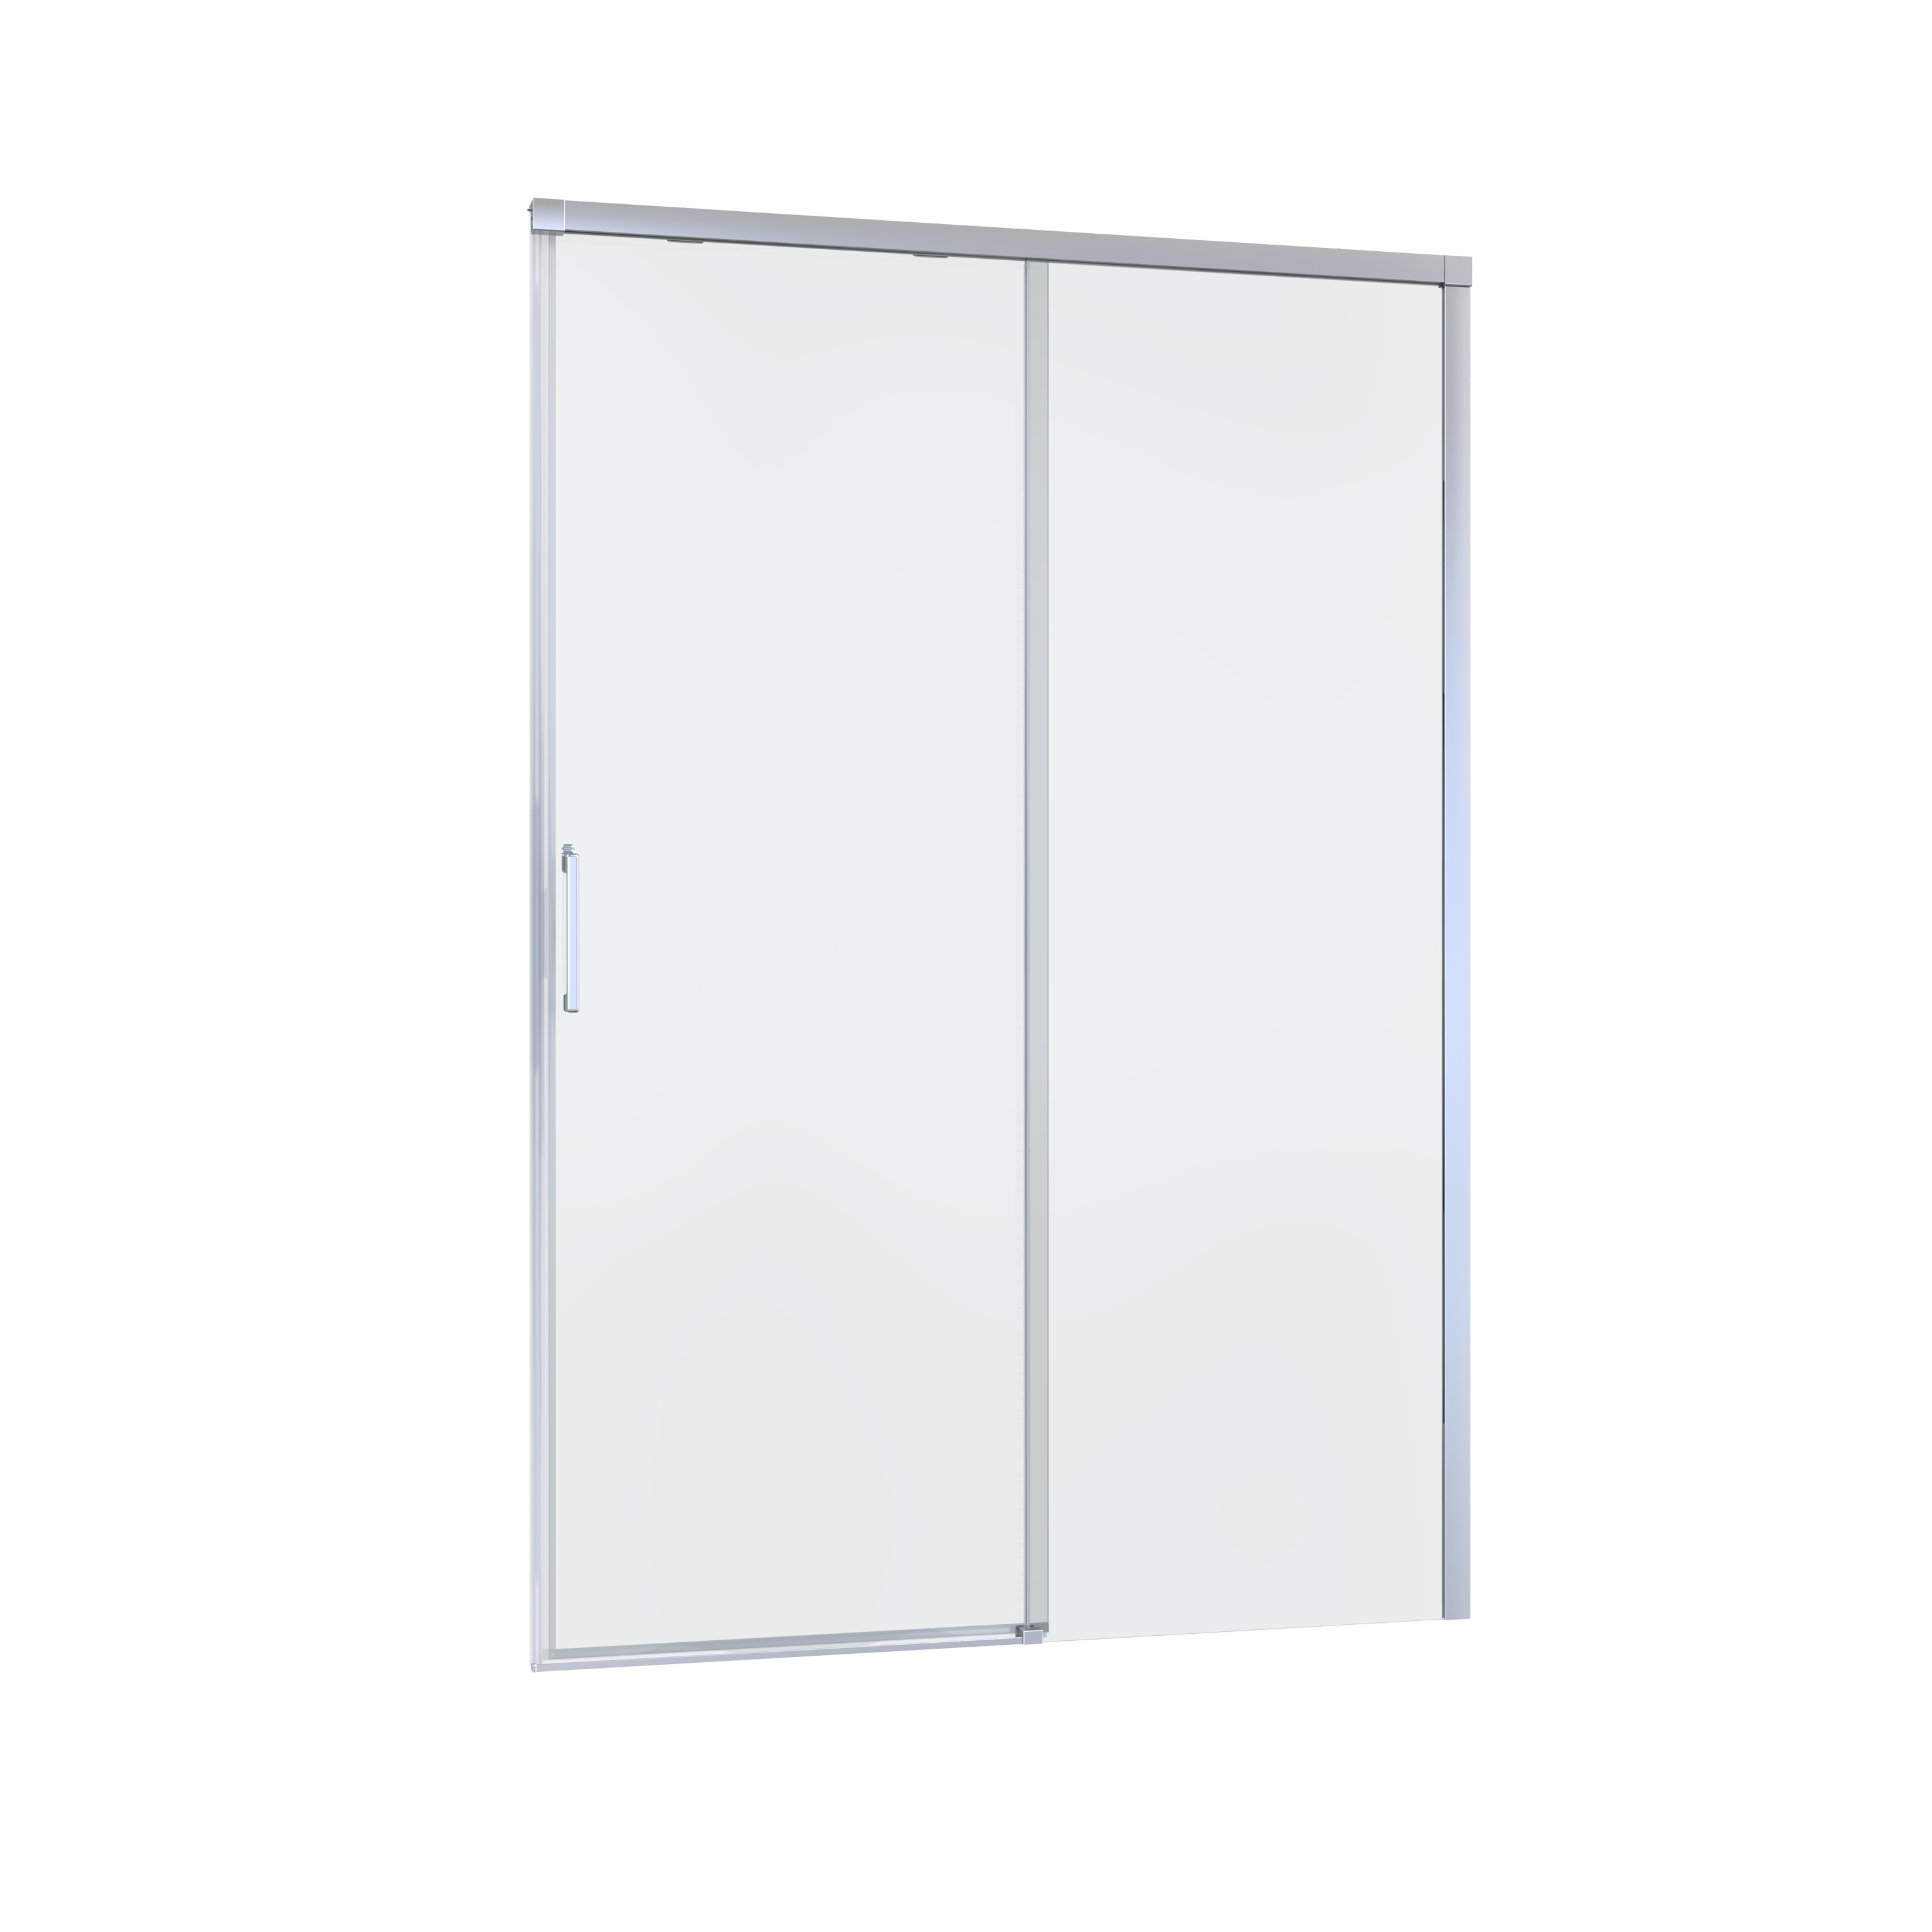 Porta doccia 1 anta fissa + 1 anta scorrevole Remix 120 cm, H 195 cm in vetro, spessore 8 mm trasparente cromato - 8